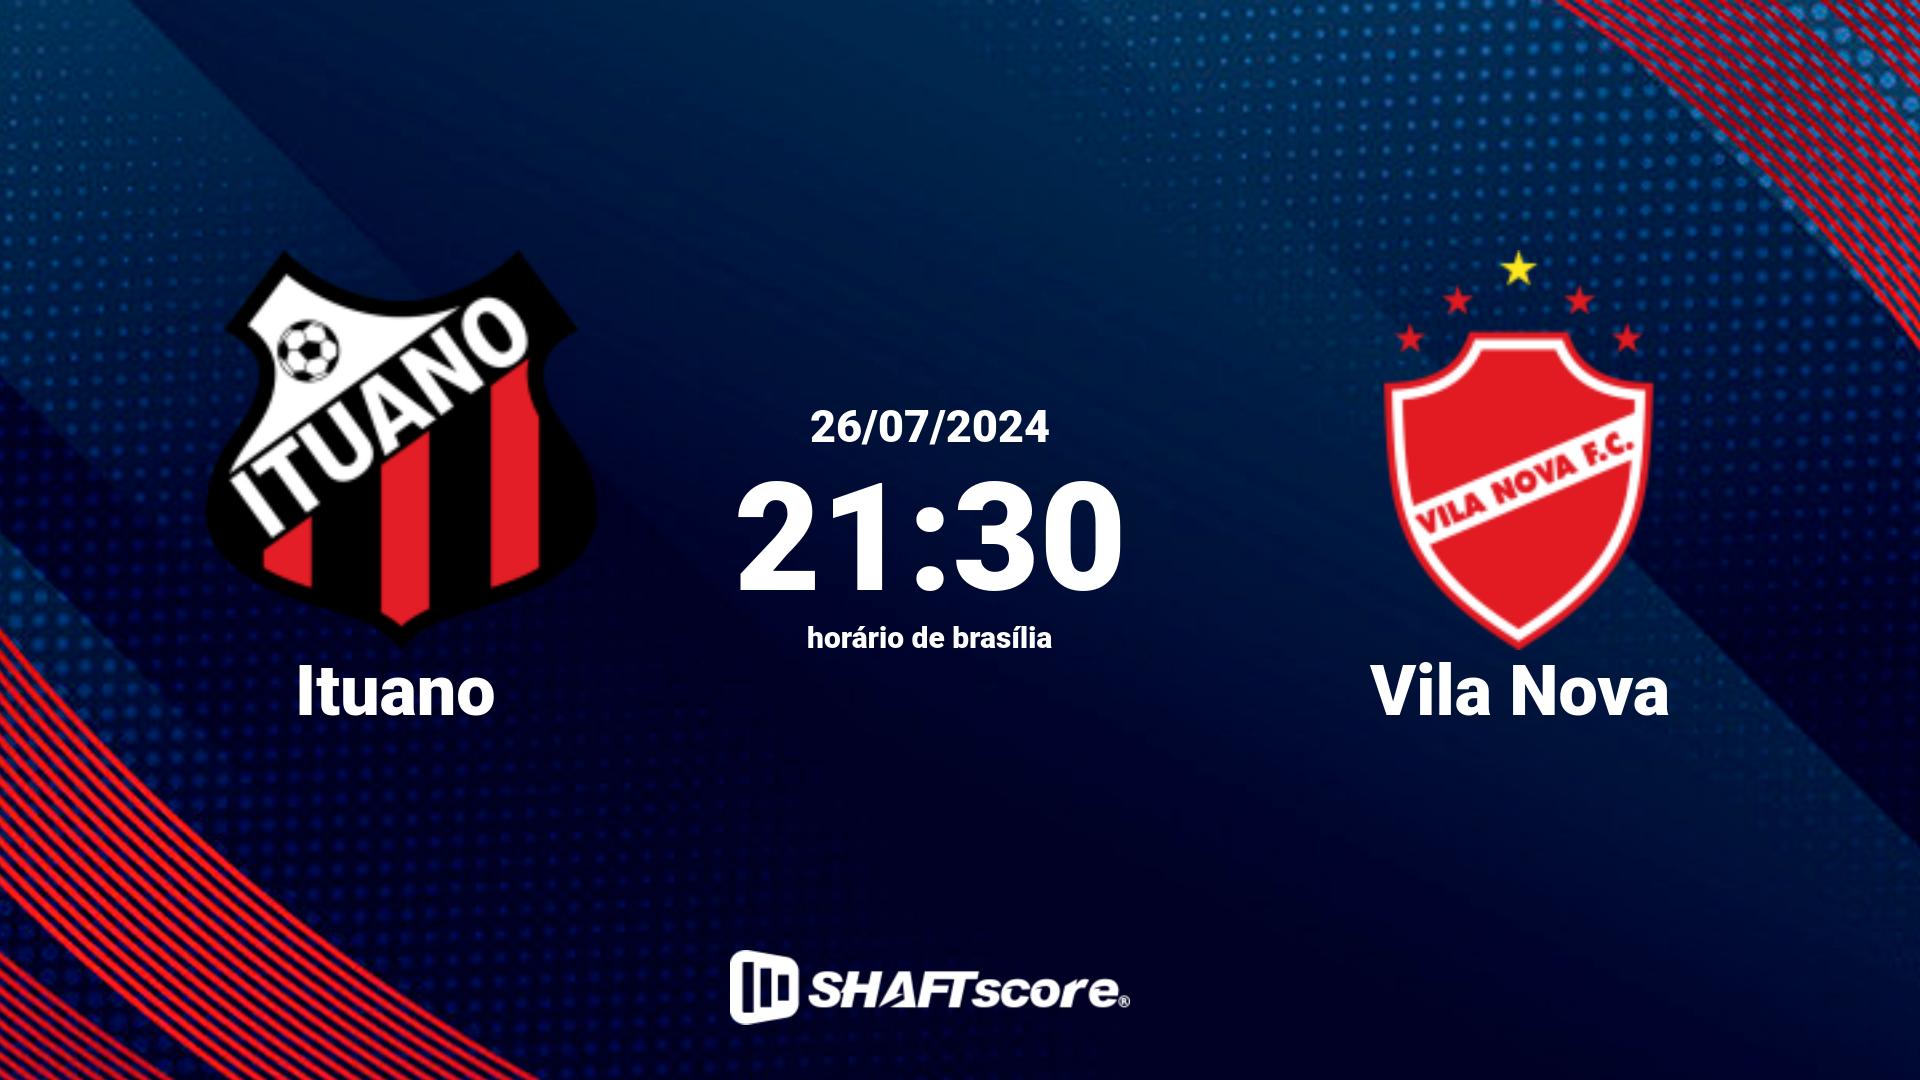 Estatísticas do jogo Ituano vs Vila Nova 26.07 21:30